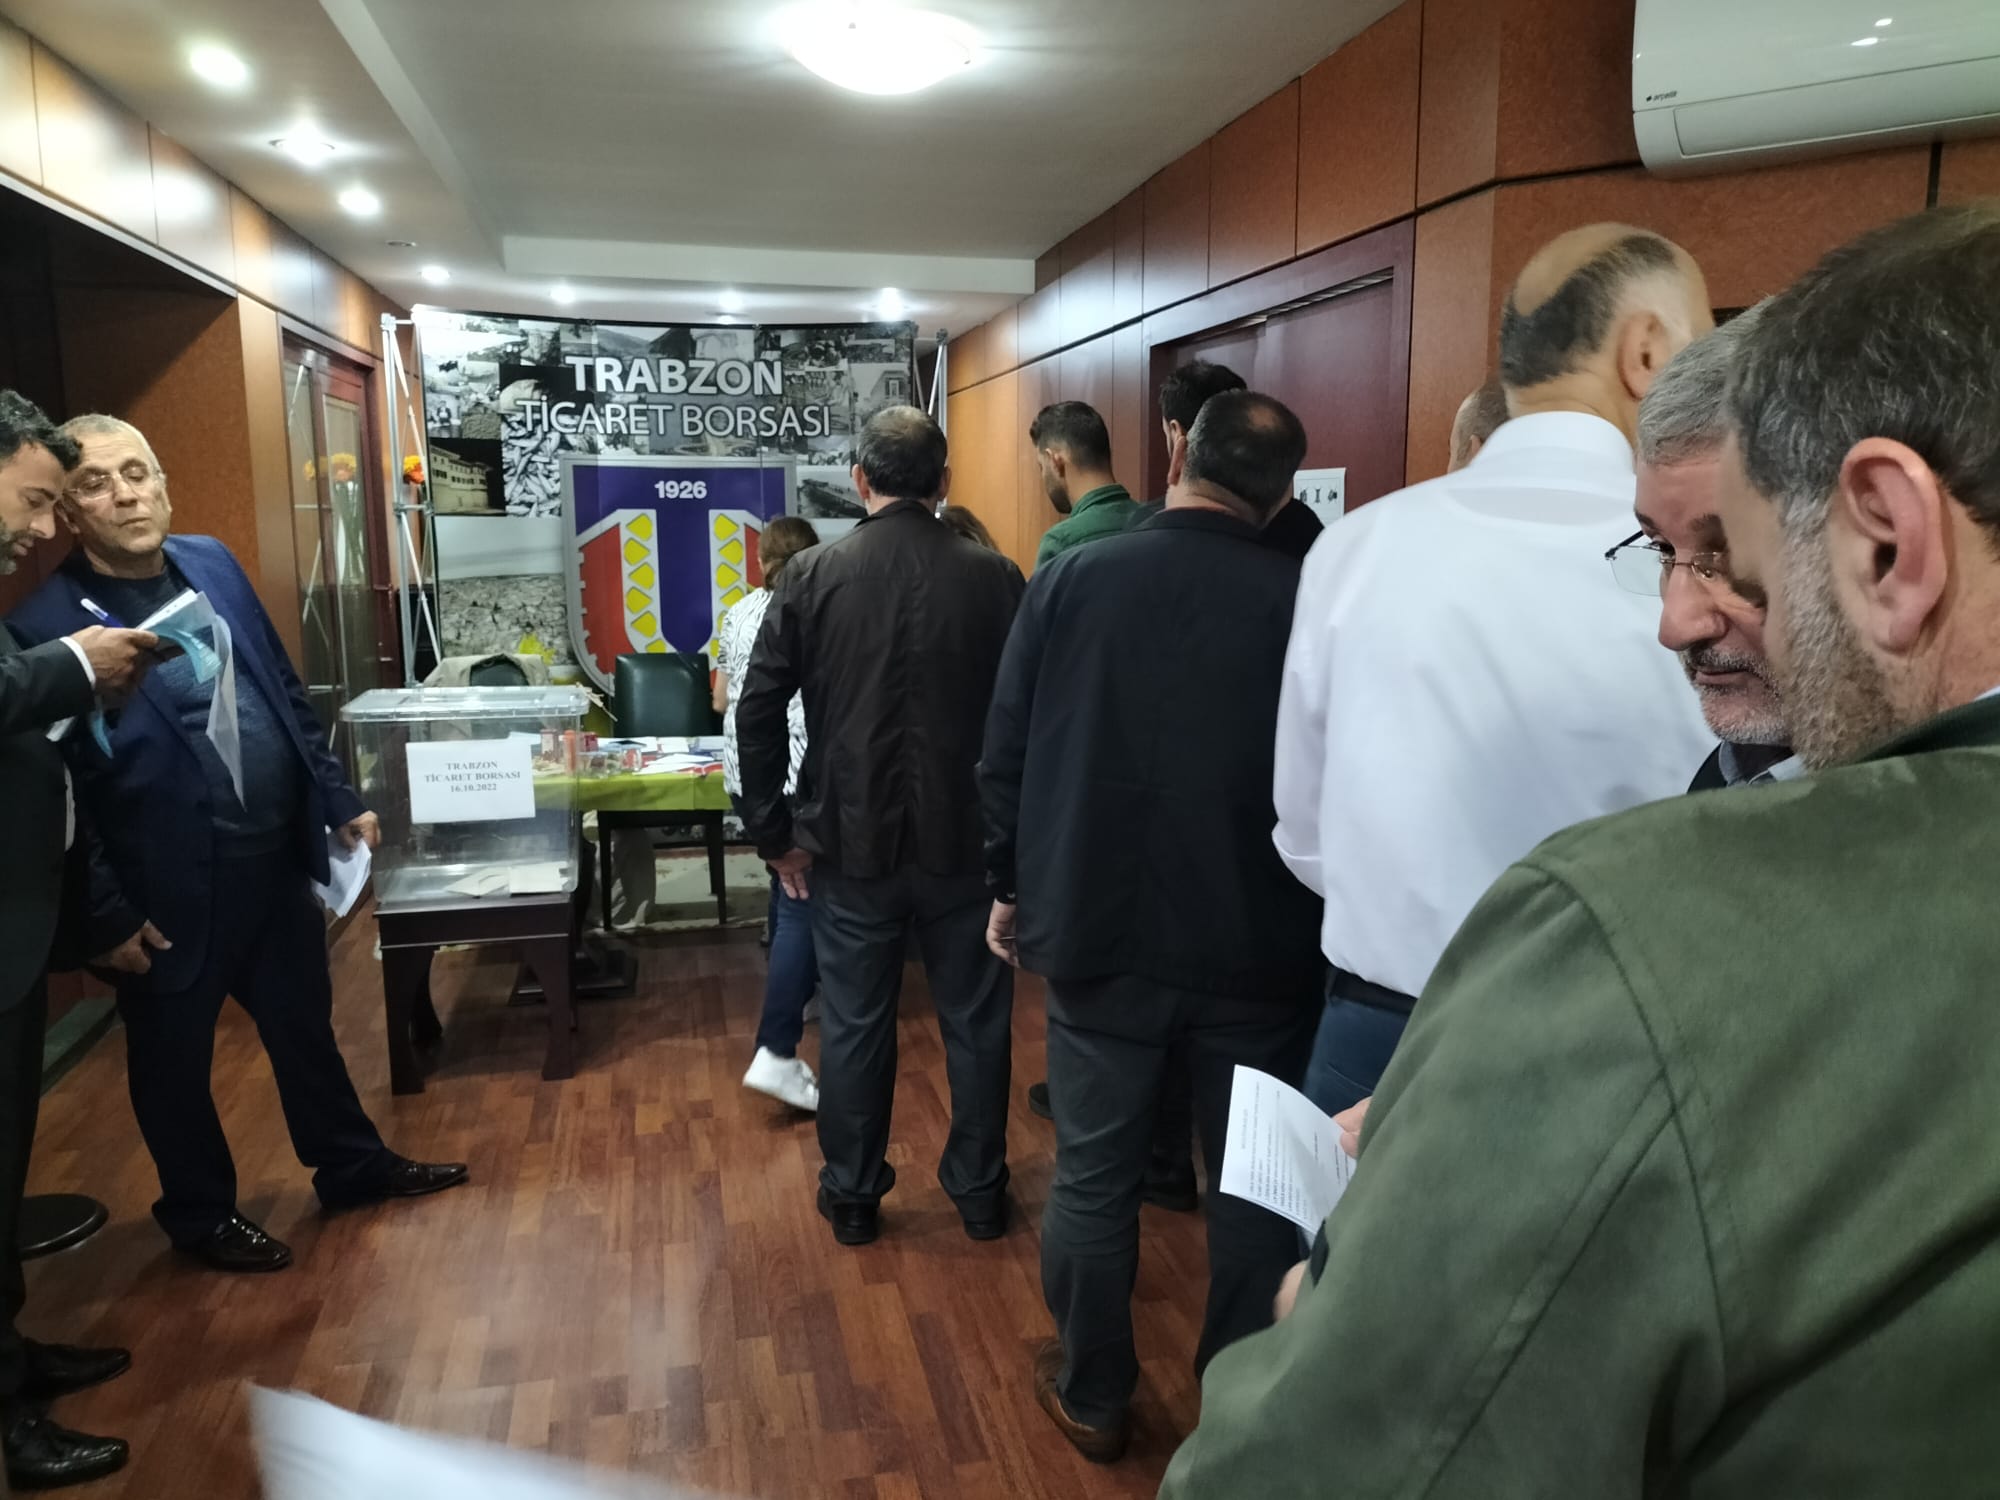 Trabzon Ticaret Borsası’nda seçim heyecanı